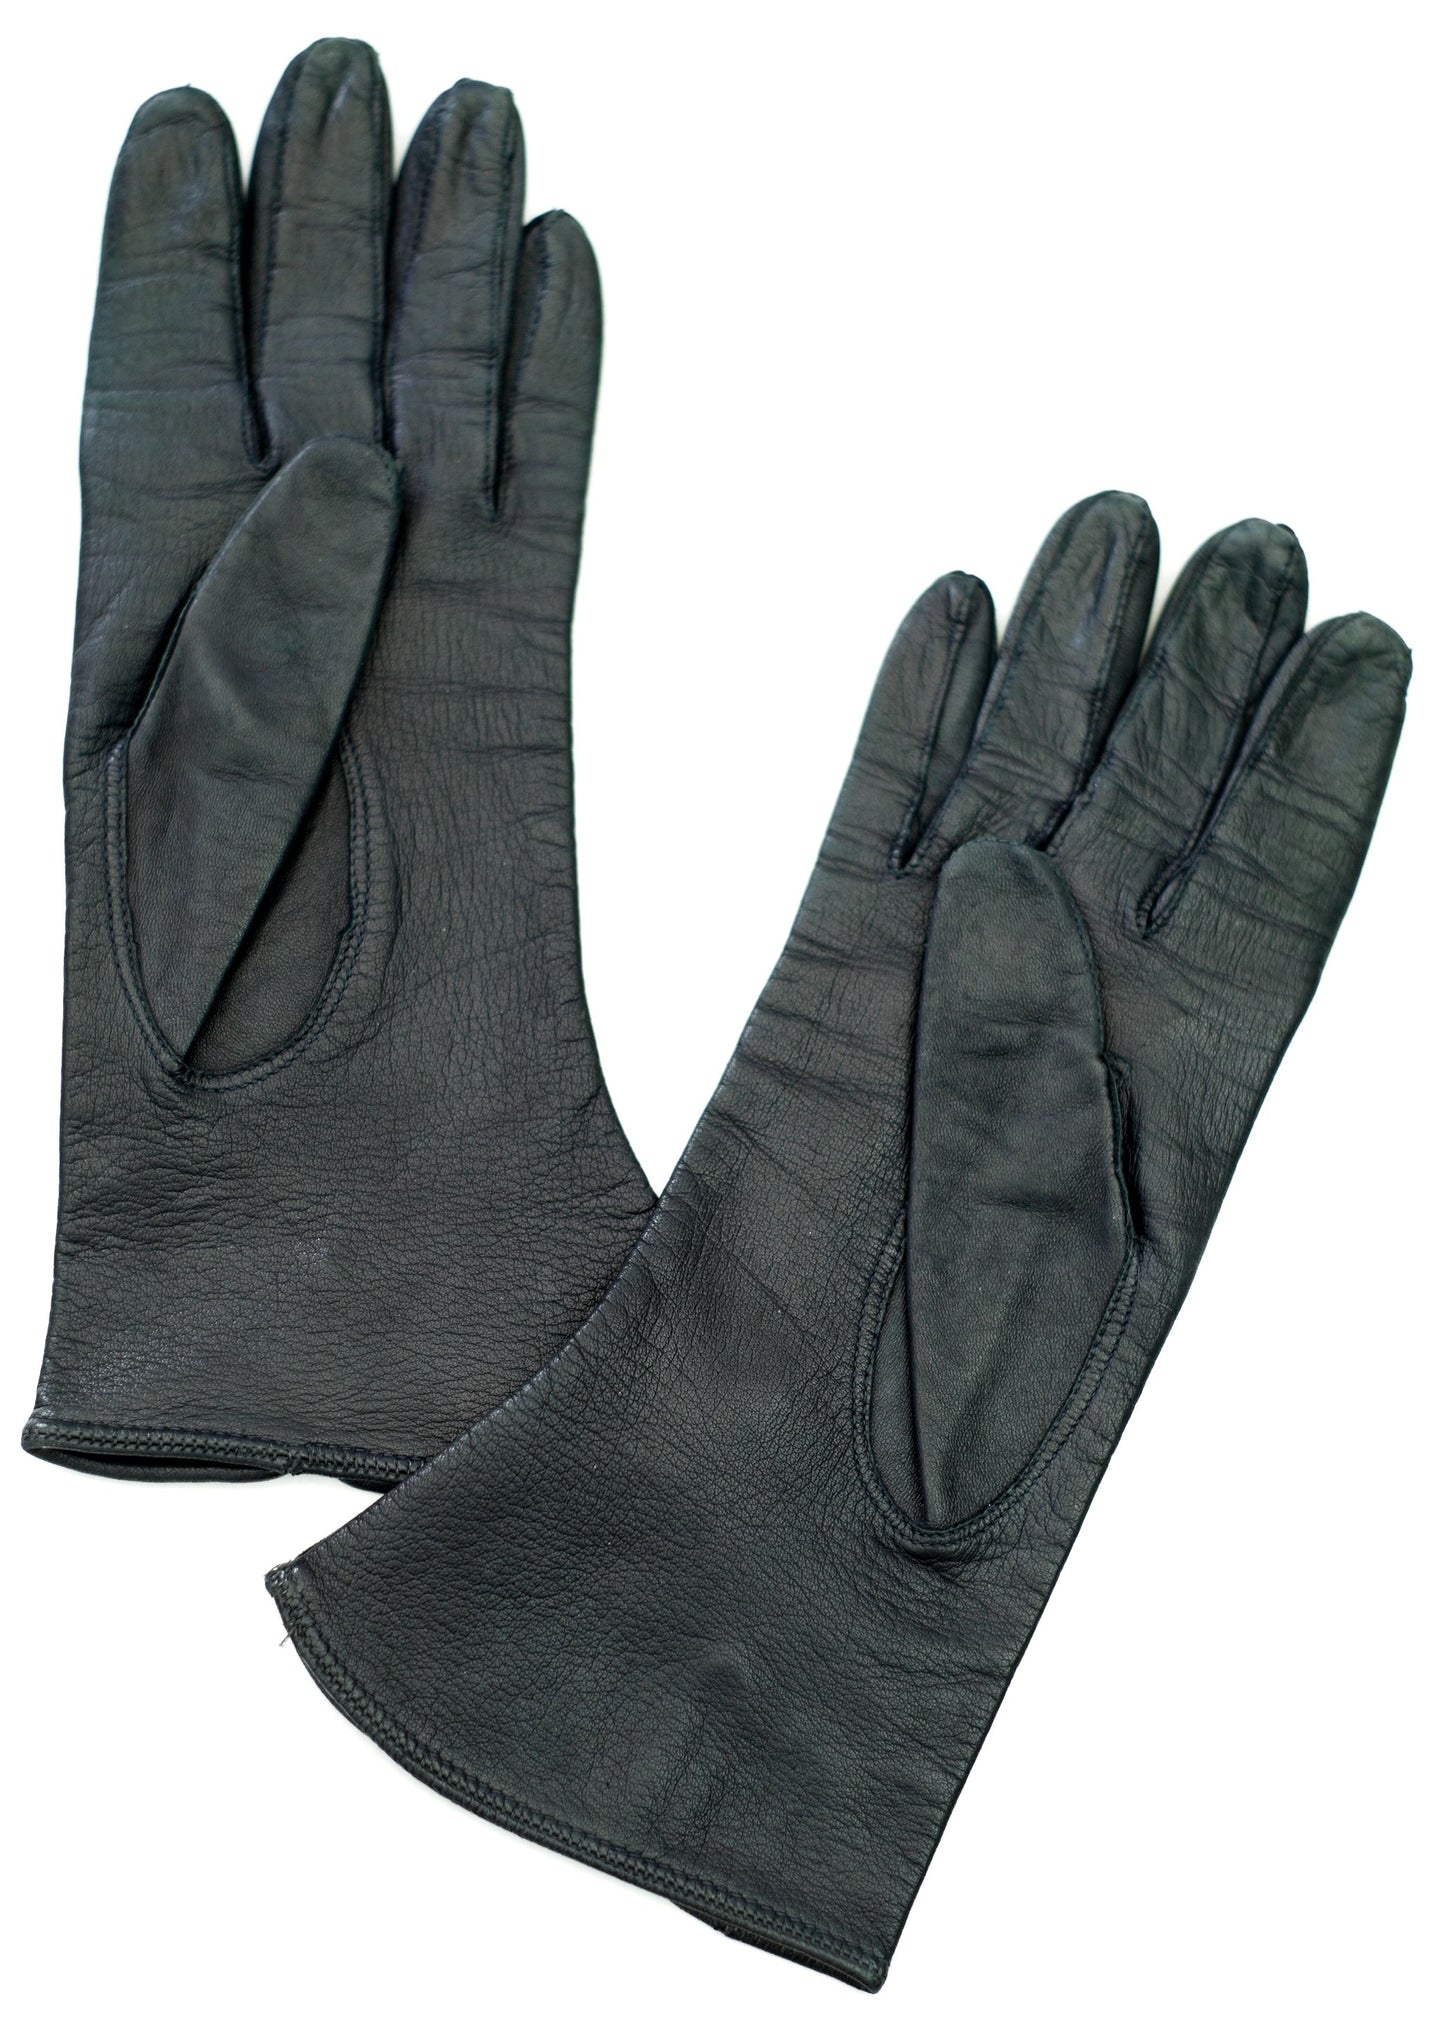 Vintage Black Leather Gloves • Wrist Length